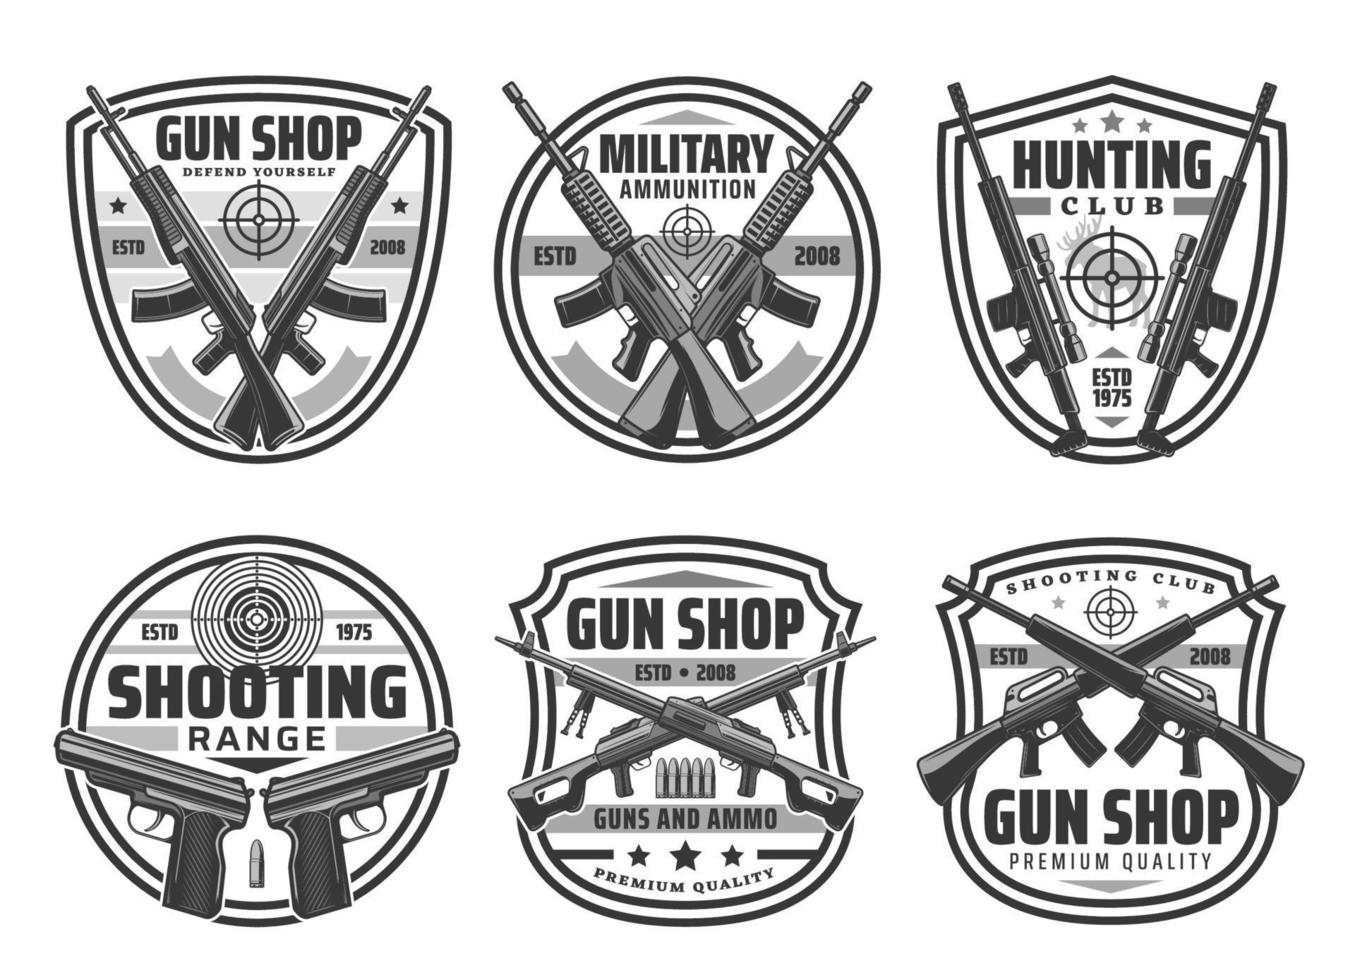 pistolas, rifles, pistolas con dianas. iconos de armas vector